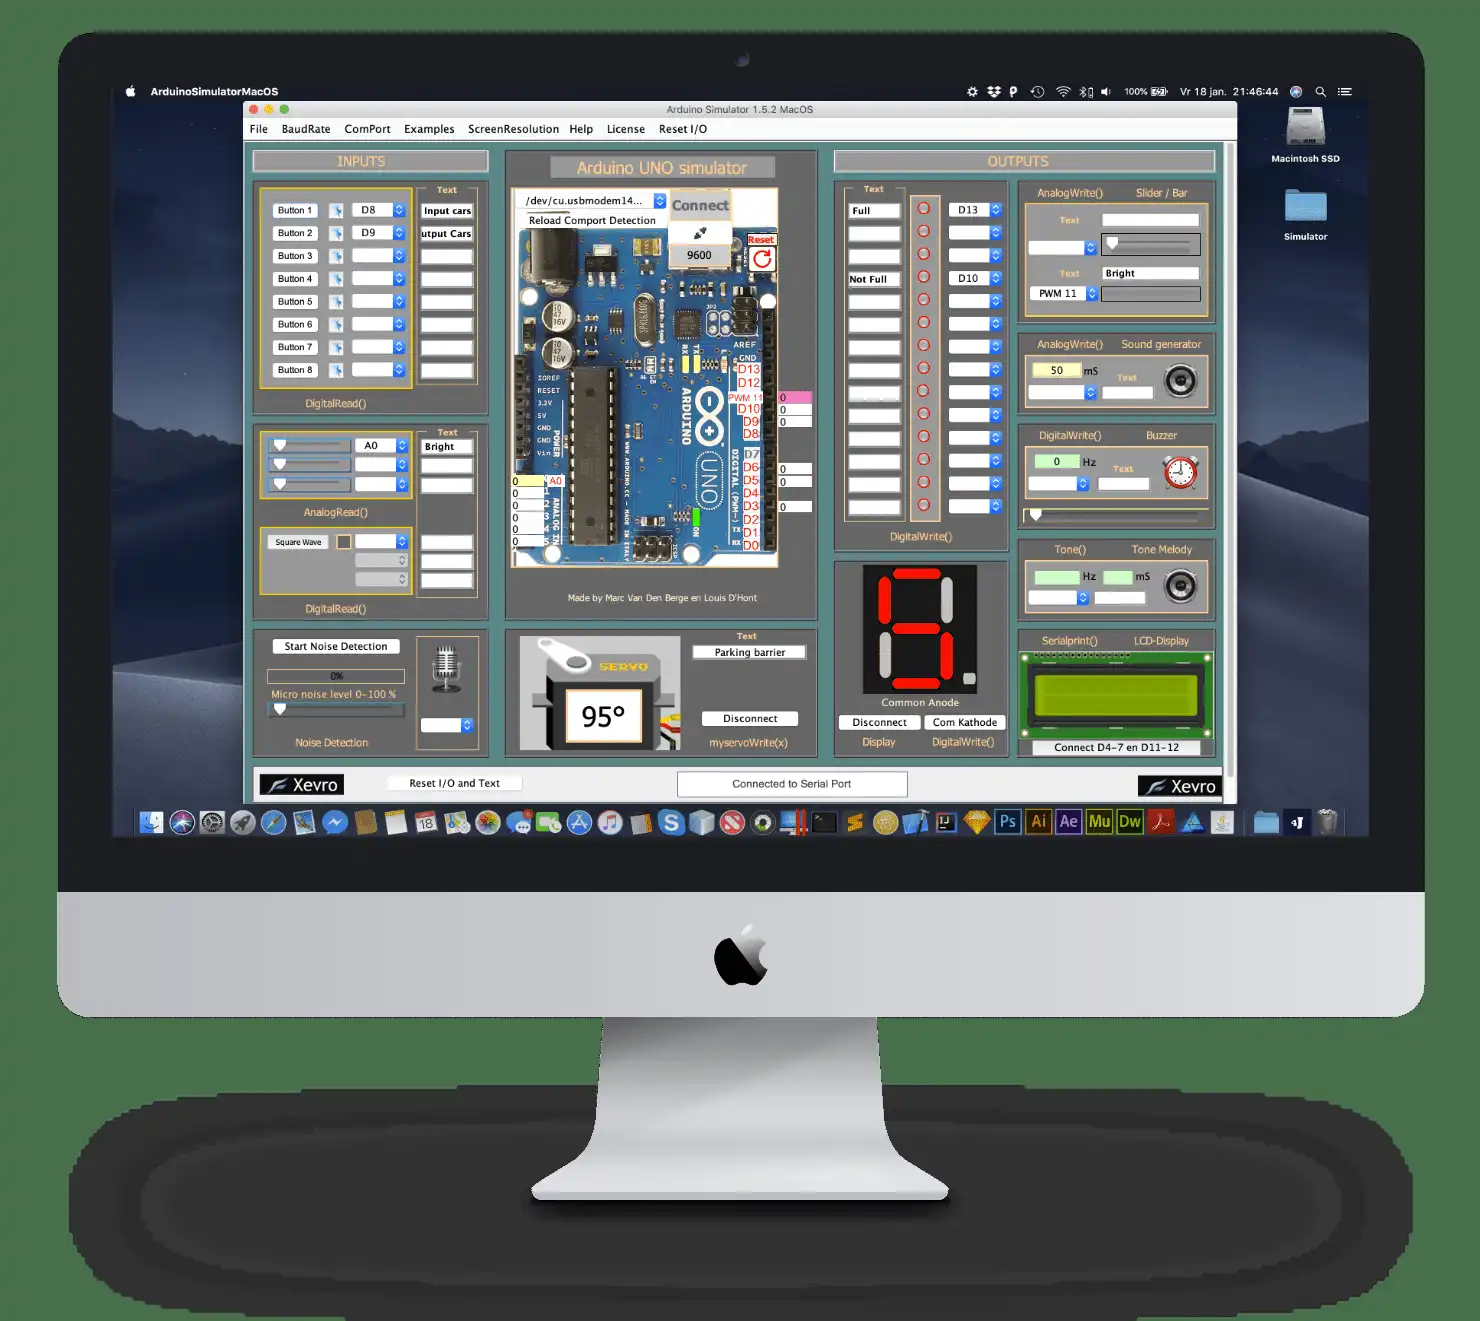 ابزار وب یا برنامه وب Arduino IO Simulator 1.7 macOS را دانلود کنید